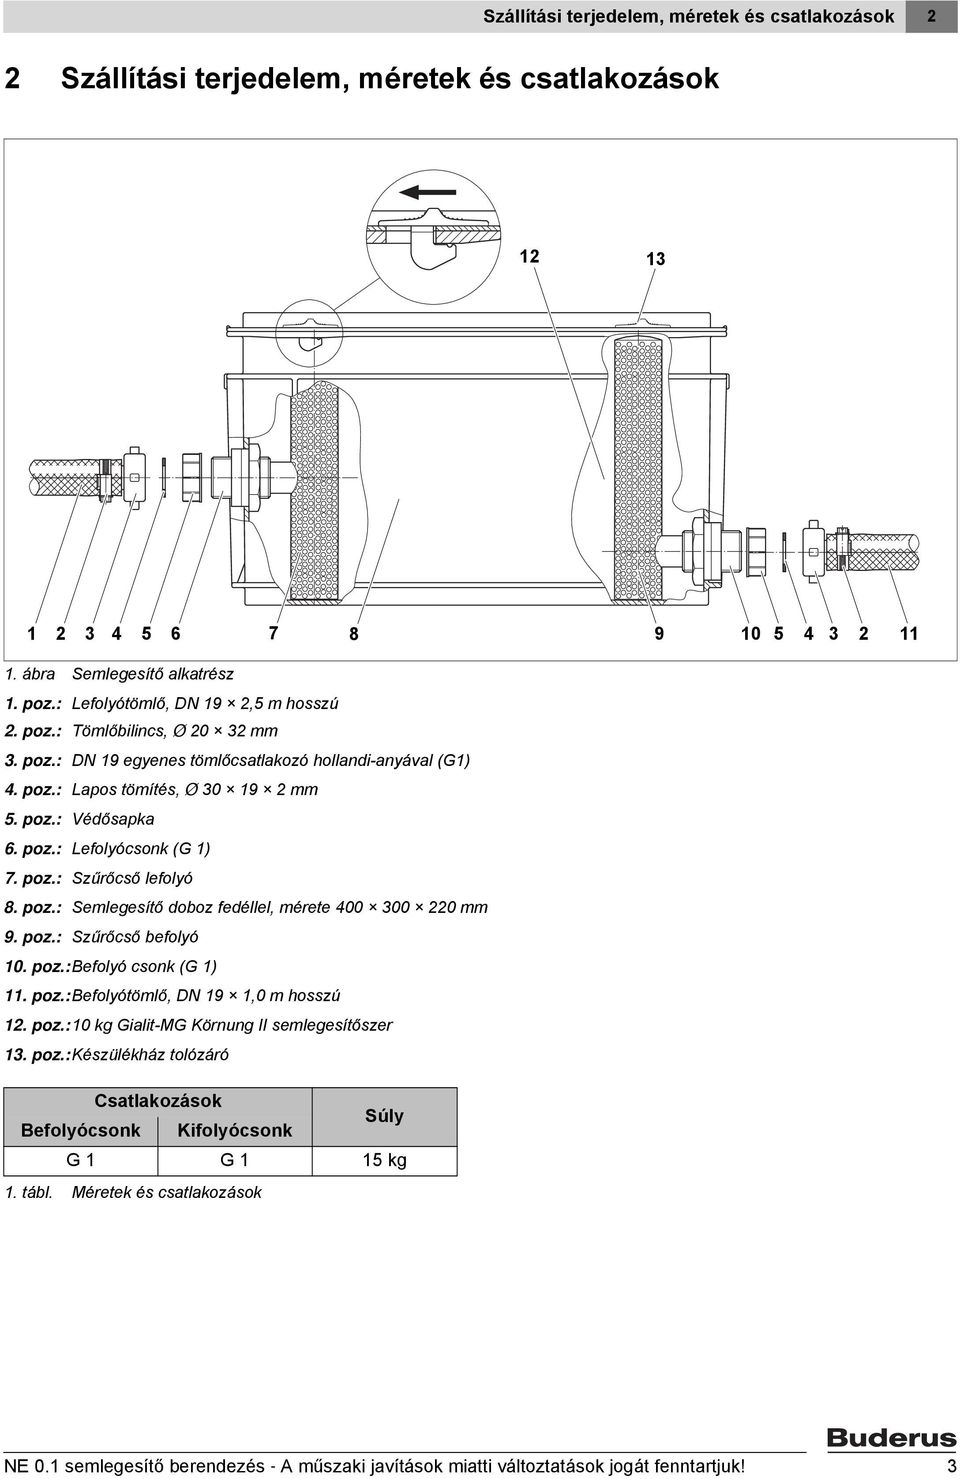 poz.: Szűrőcső lefolyó 8. poz.: Semlegesítő doboz fedéllel, mérete 400 300 220 mm 9. poz.: Szűrőcső befolyó 10. poz.:befolyó csonk (G 1) 11. poz.:befolyótömlő, DN 19 1,0 m hosszú 12. poz.: 10 kg Gialit-MG Körnung II semlegesítőszer 13.